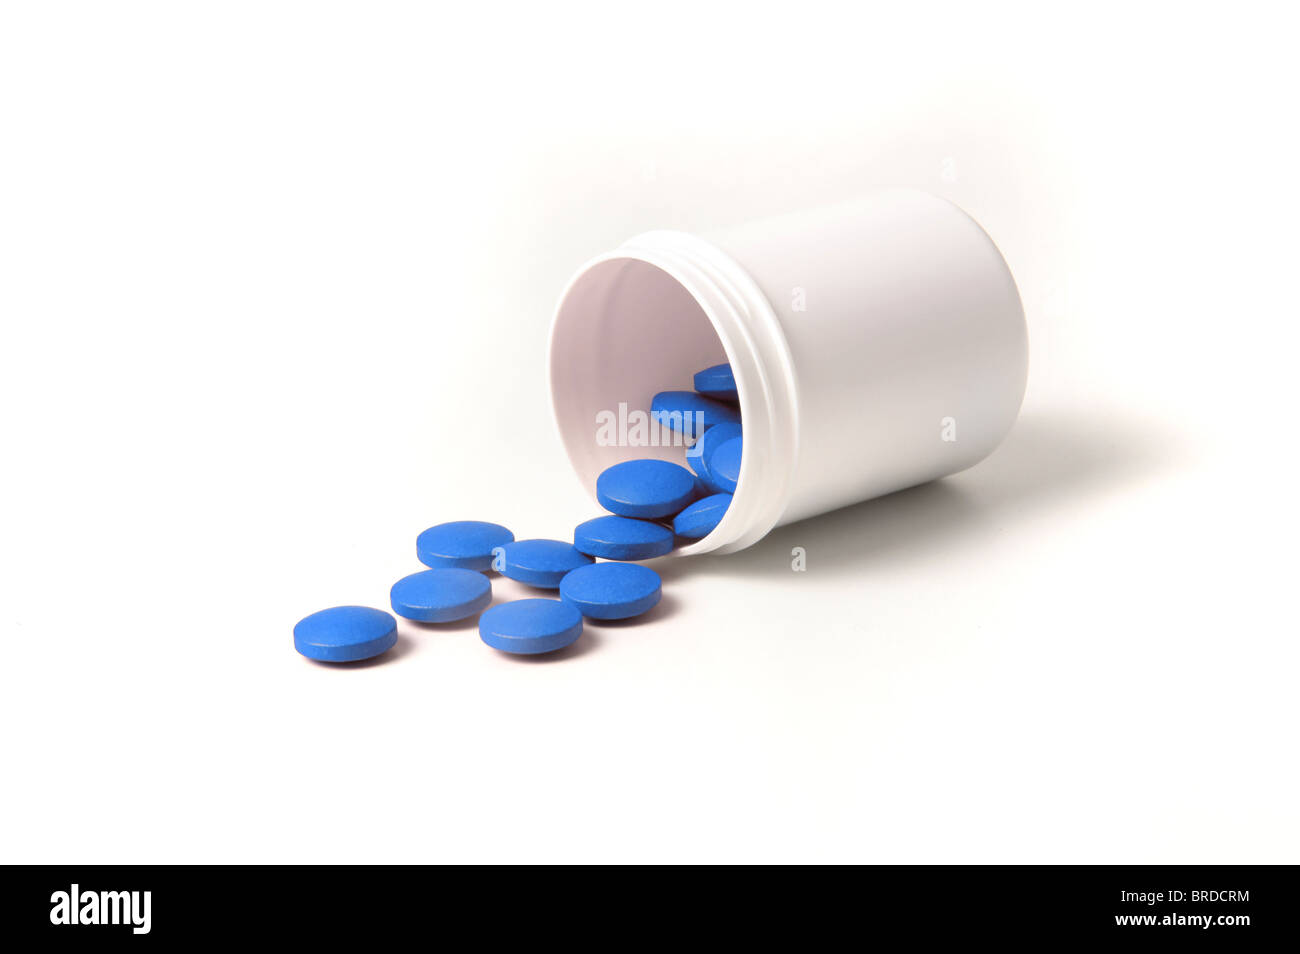 Varias pastillas de color azul y el contenedor. Todas aisladas sobre fondo blanco. Foto de stock